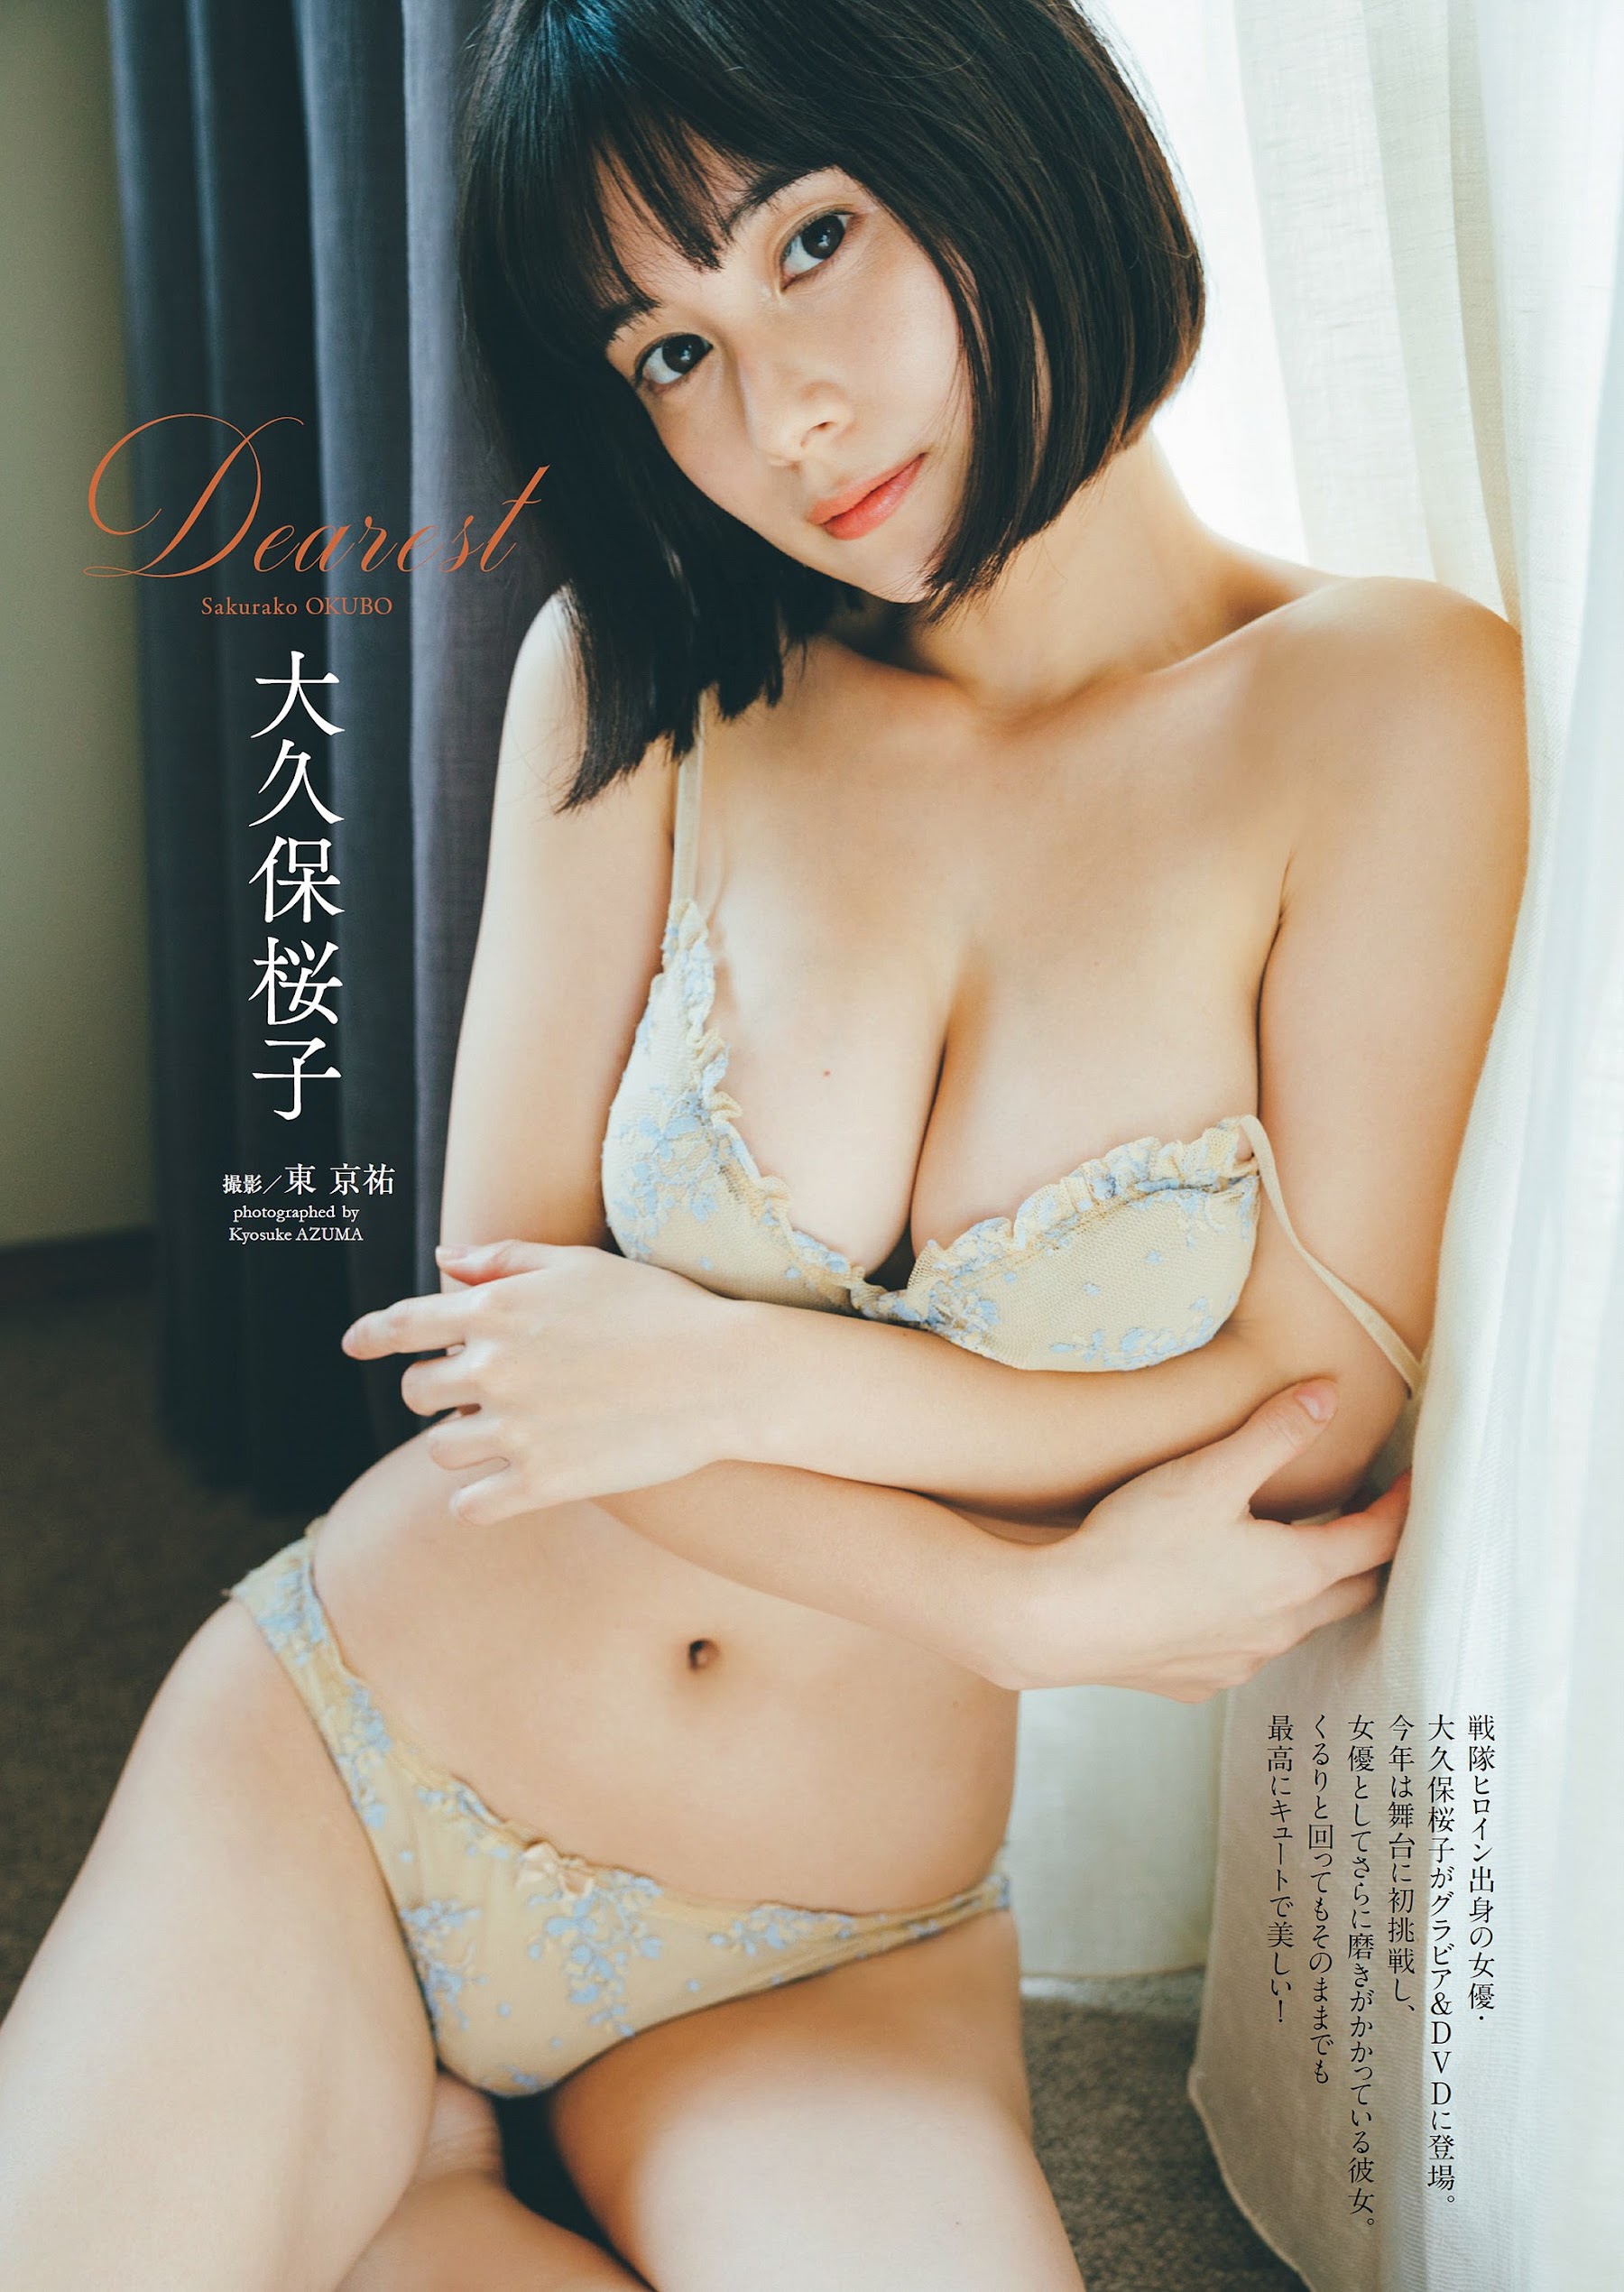 吉冈里帆 小日向ゆか 大久保樱子-Weekly Playboy 2022.12.12 No.49-50 高清套图 第41张